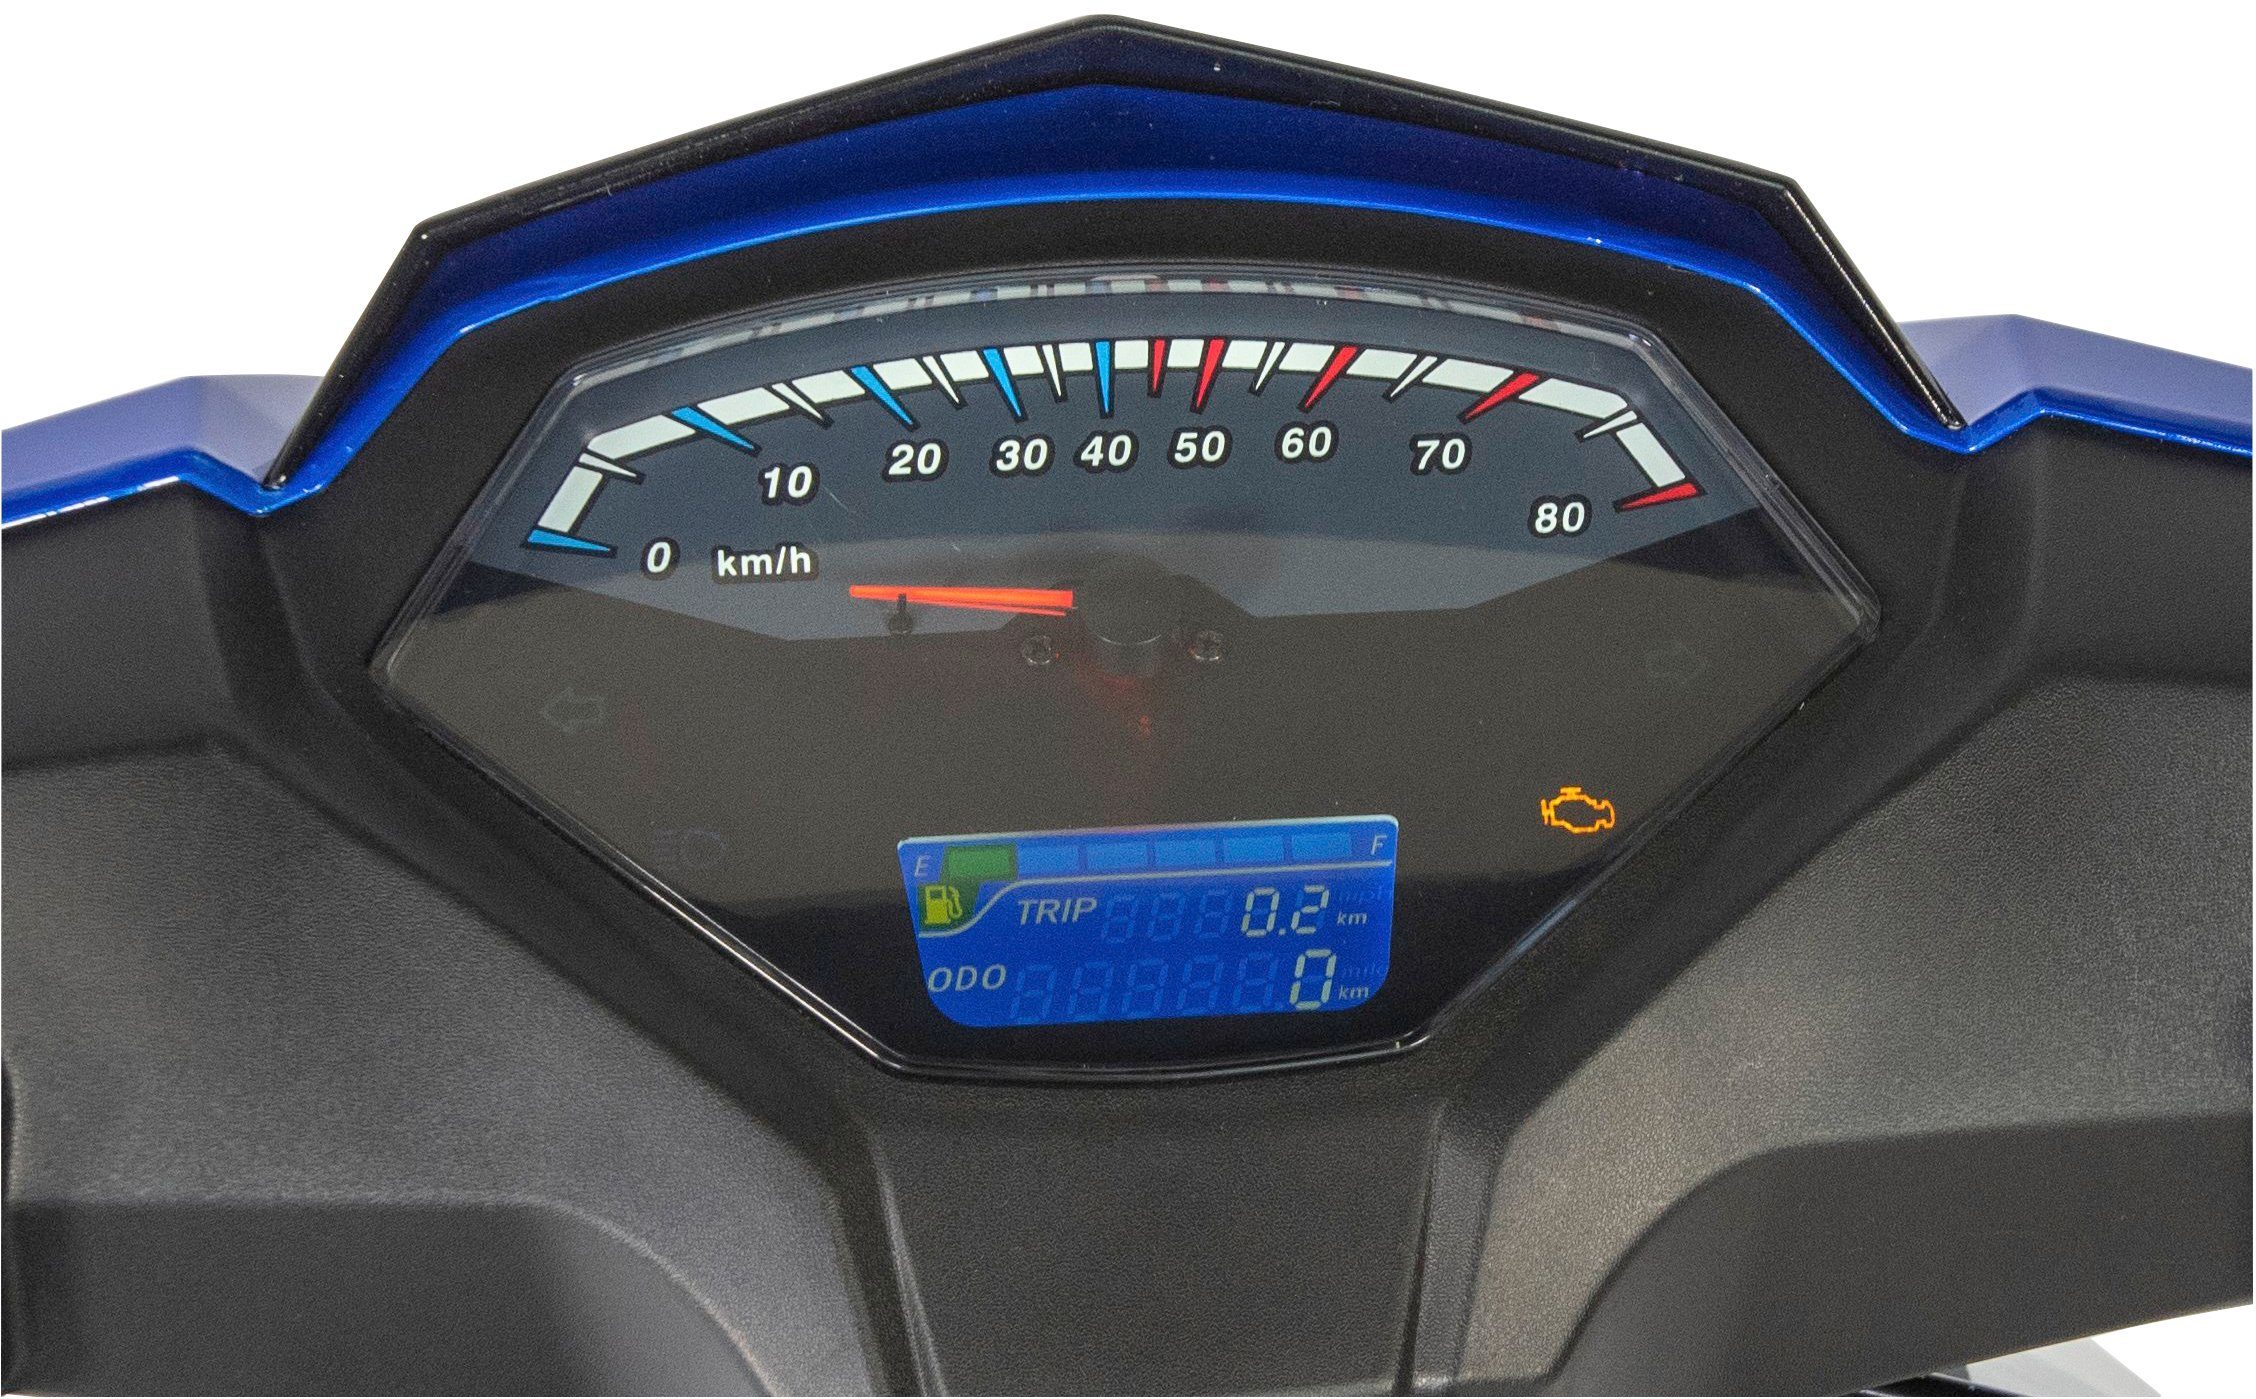 45 blau Euro 5 UNION ccm, 50-45, 50 Sonic X GT km/h, Motorroller